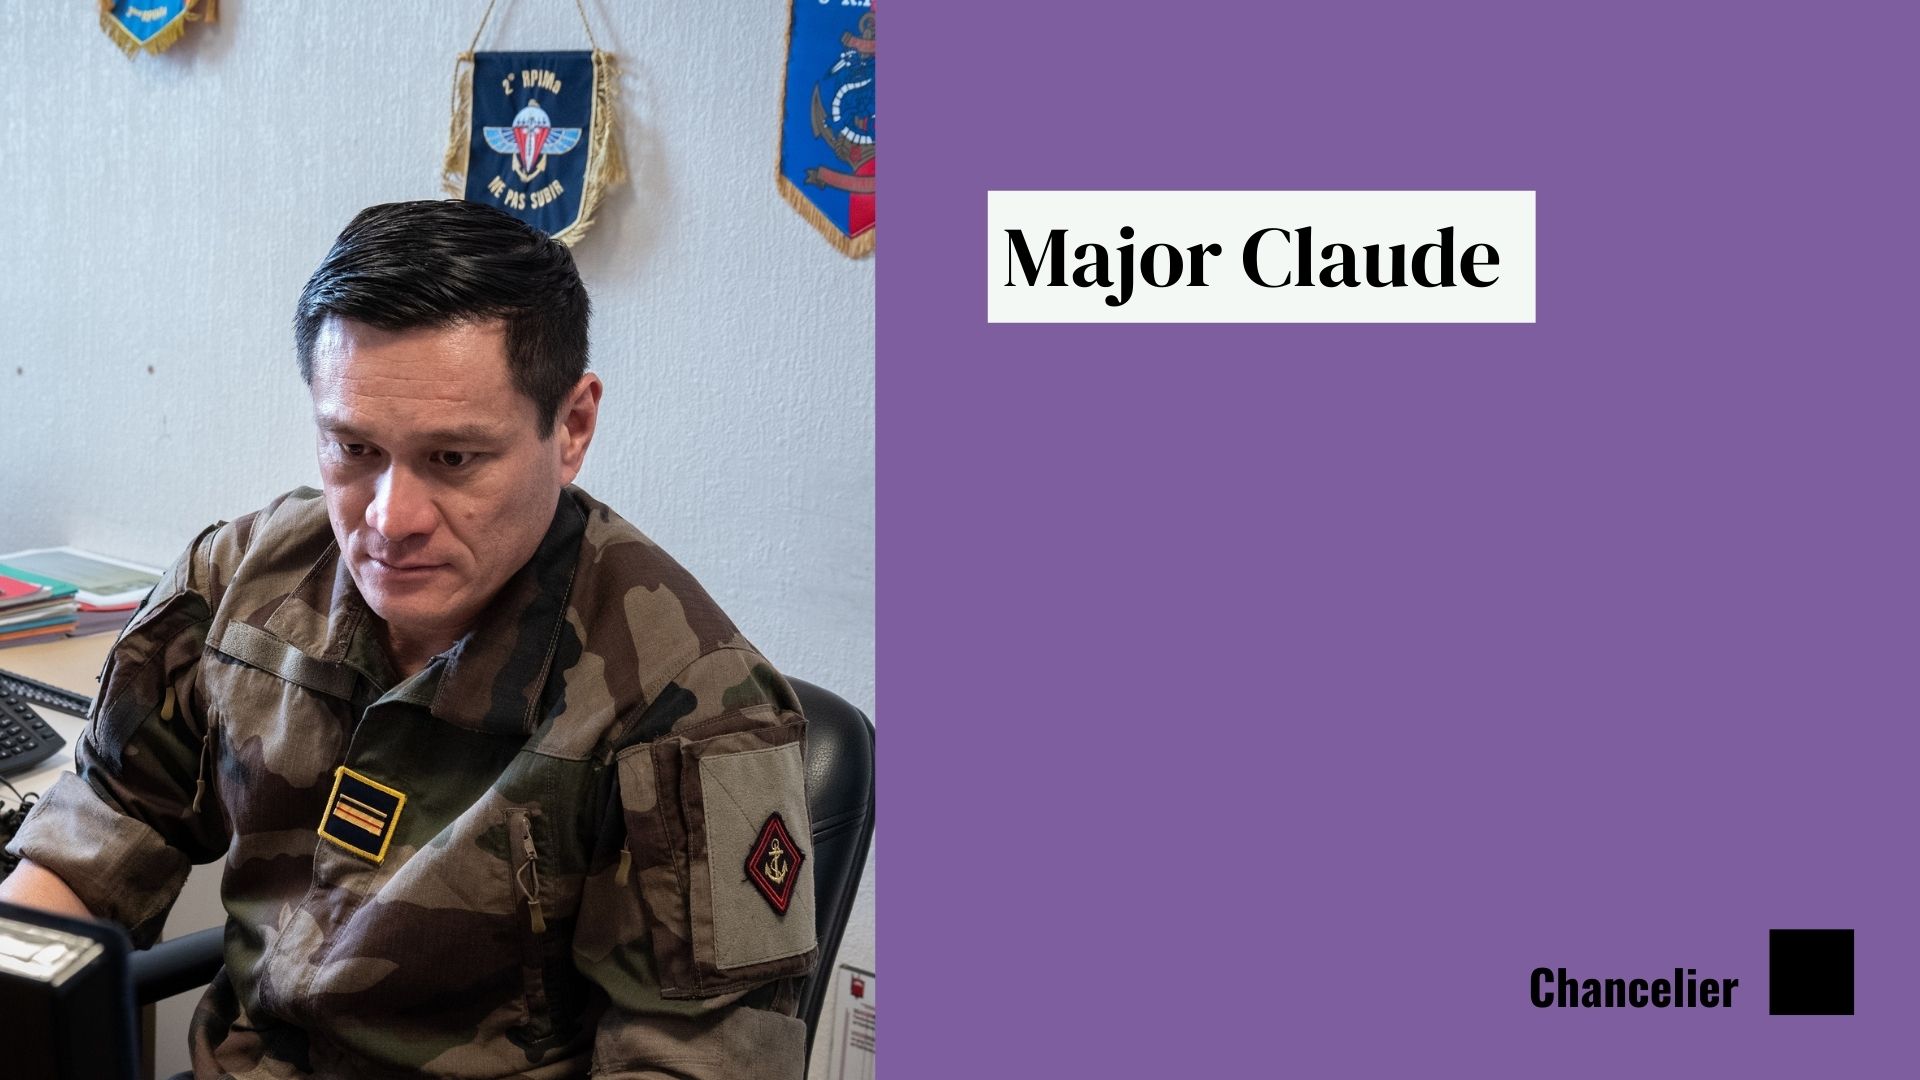 Major Claude